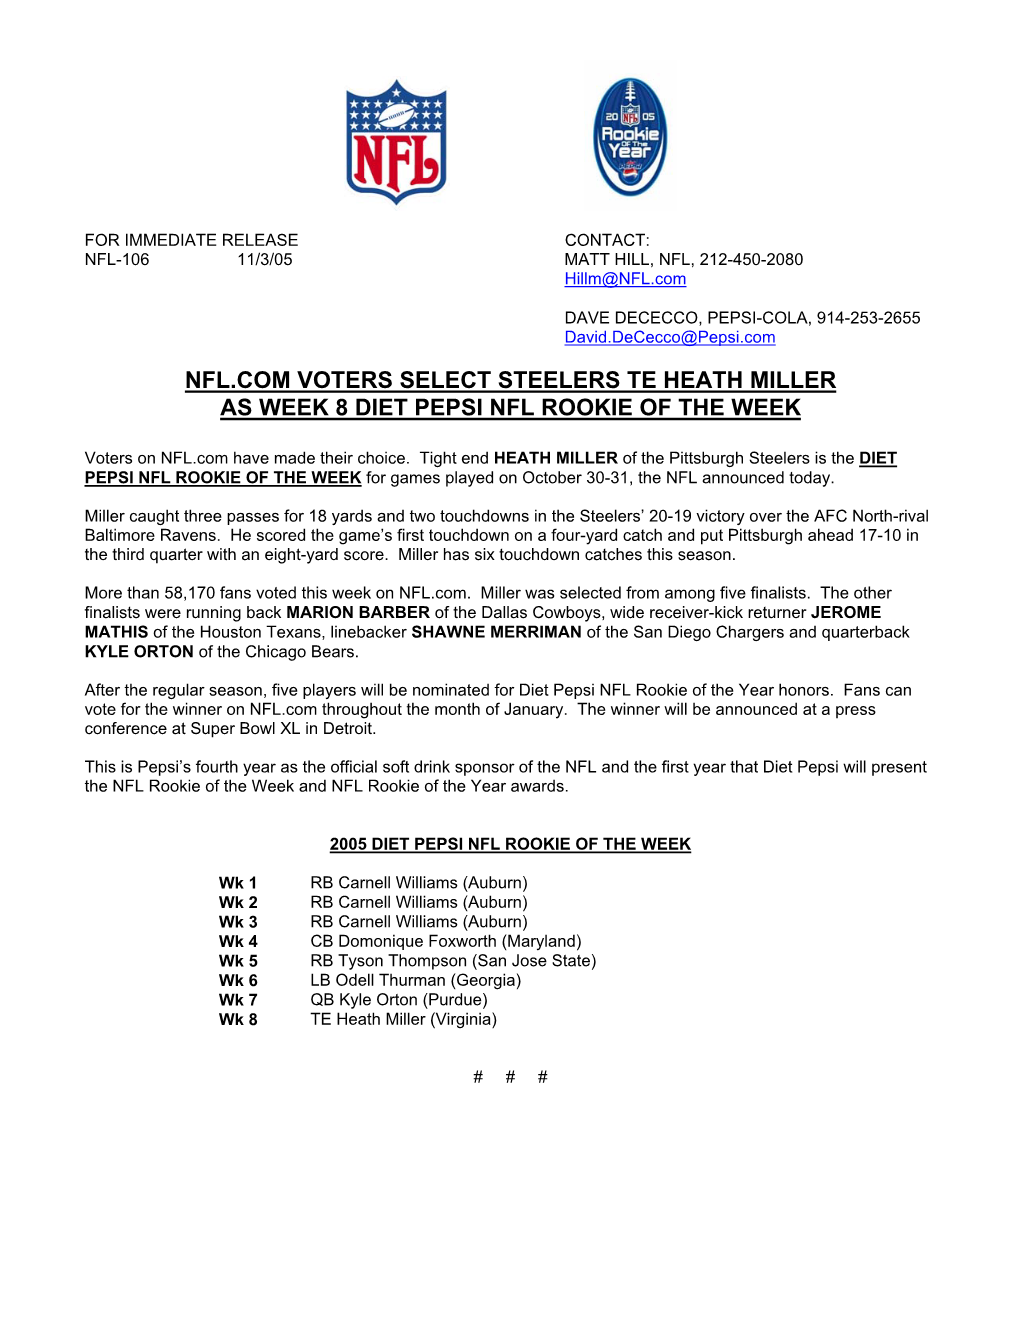 Nfl.Com Voters Select Steelers Te Heath Miller As Week 8 Diet Pepsi Nfl Rookie of the Week